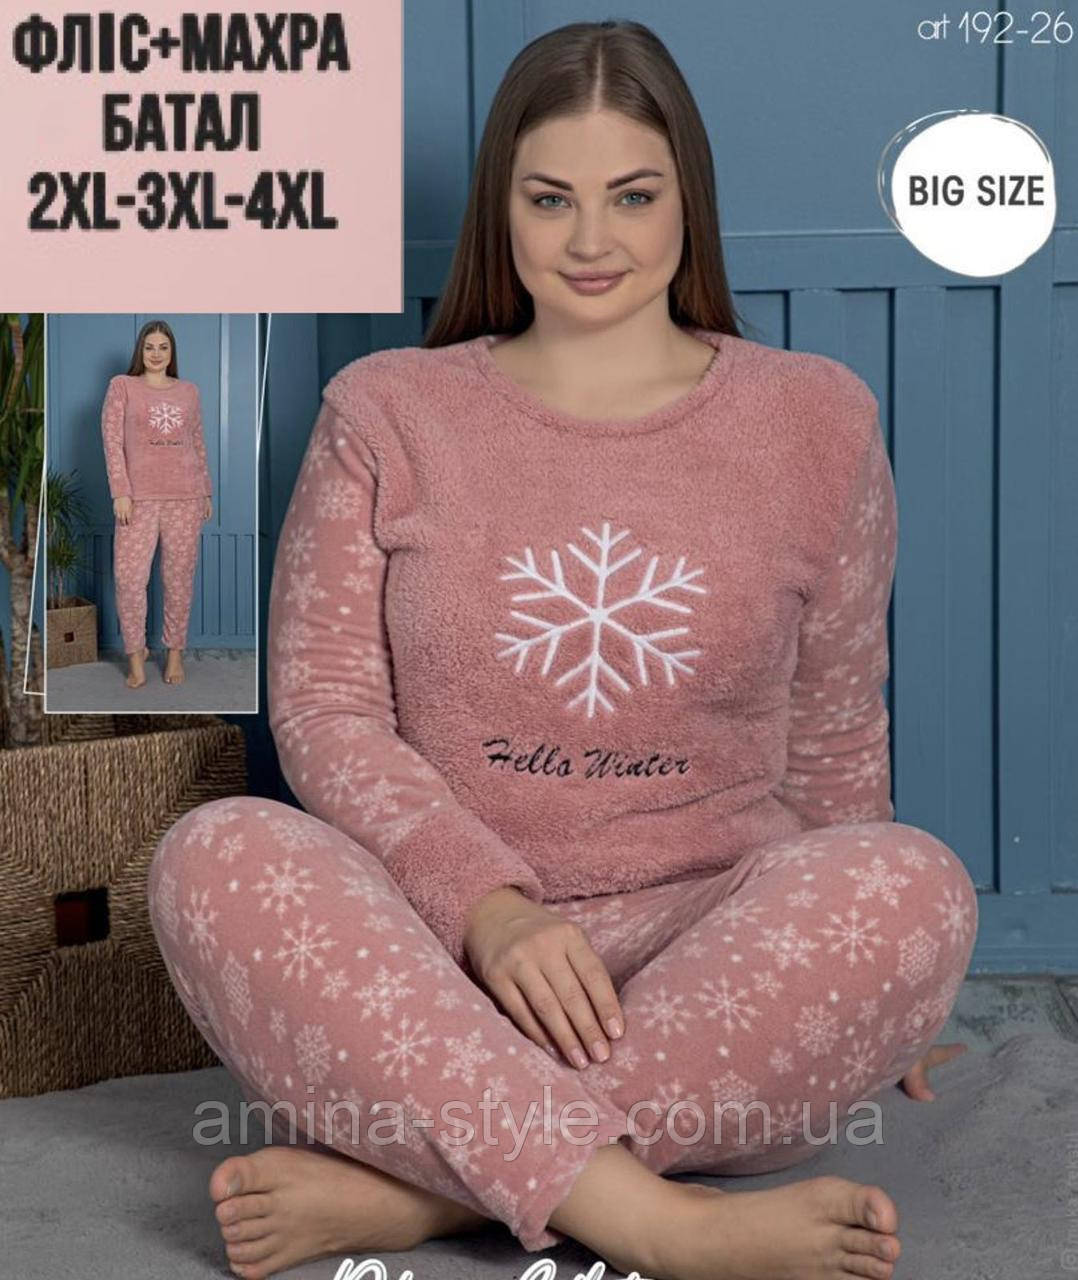 Зимова жіноча піжама Сніжинка  фліс з махрою великий розмір 2XL. Одяг для дому та сну Туреччина